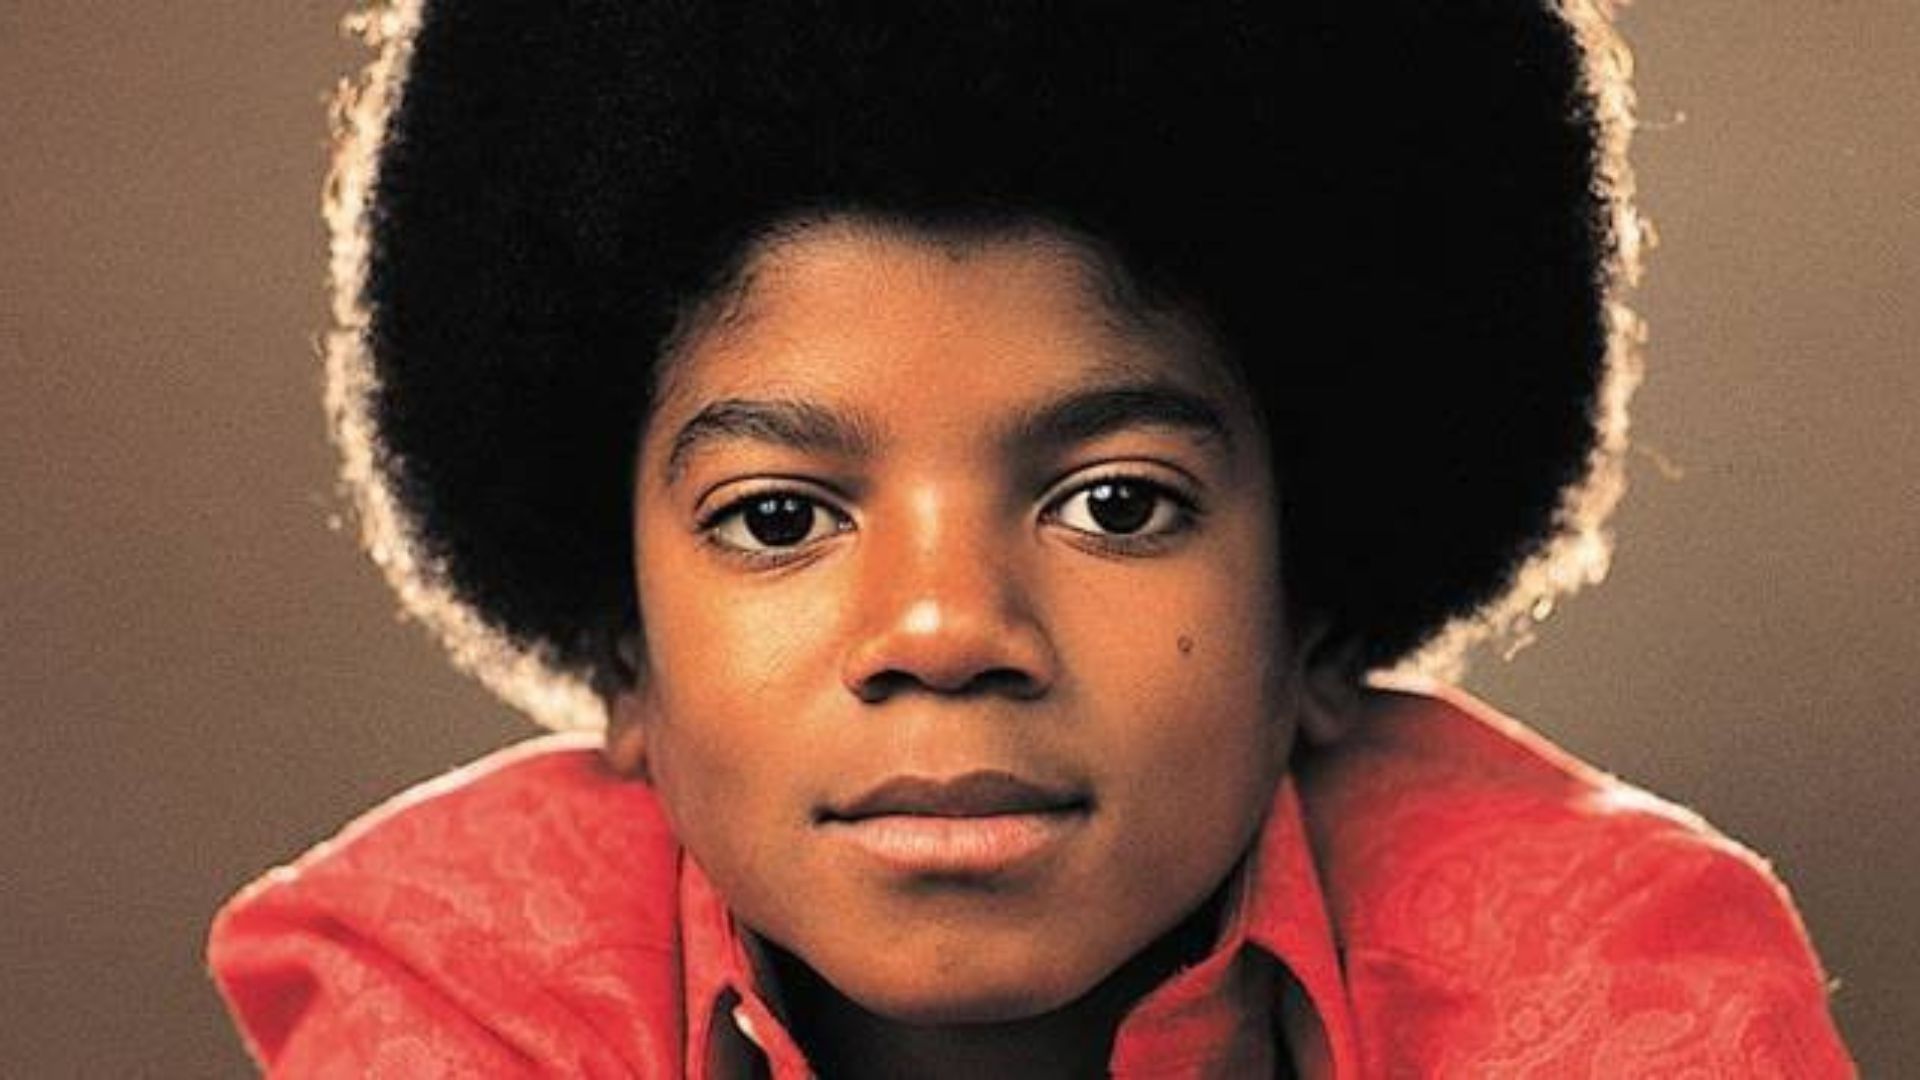 Escolhido o ator mirim para interpretar Michael Jackson em sua cinebiografia